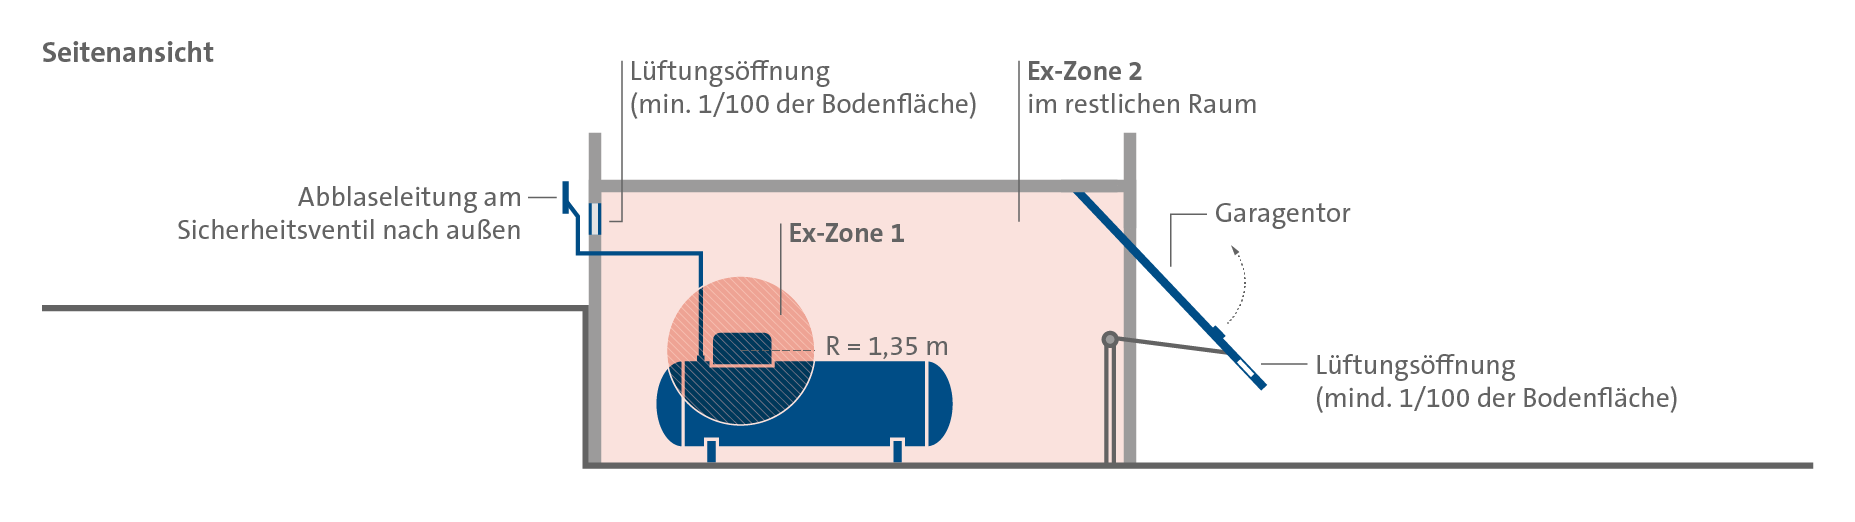 Darstellung der Ex-Zonen eines Flüssiggastanks in einem geschlossenen Raum (Seitenansicht).